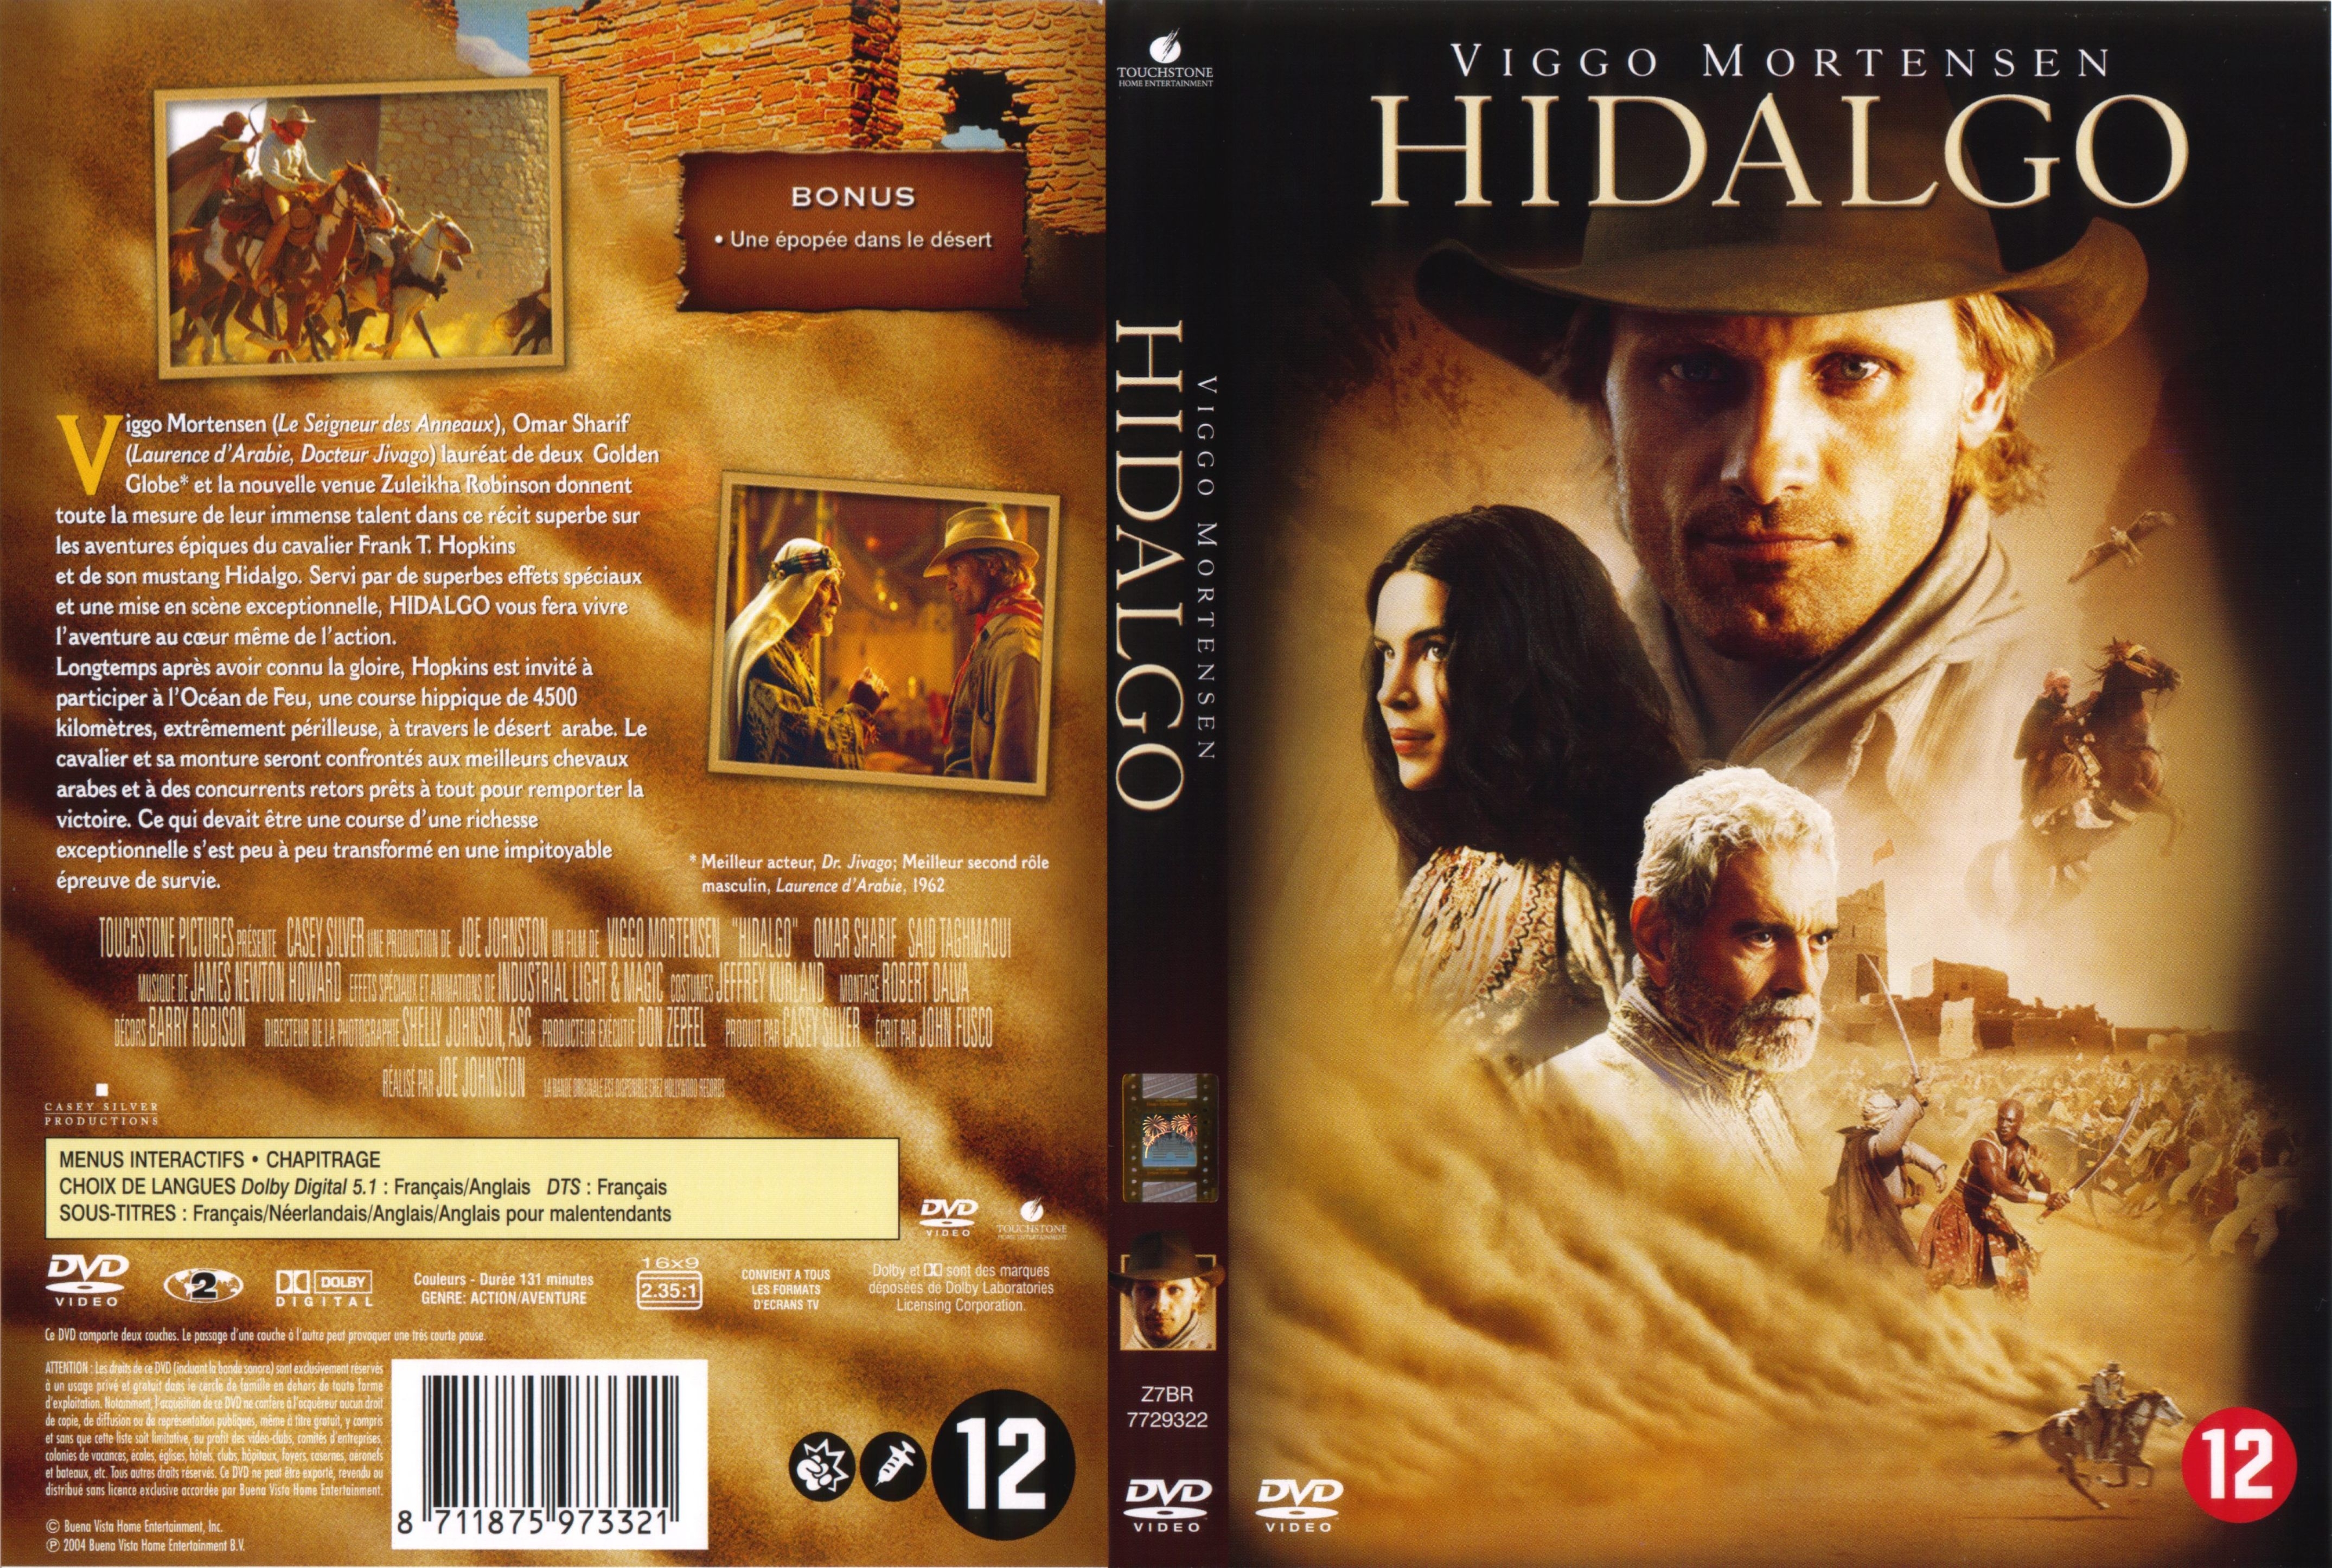 Jaquette DVD Hidalgo v2